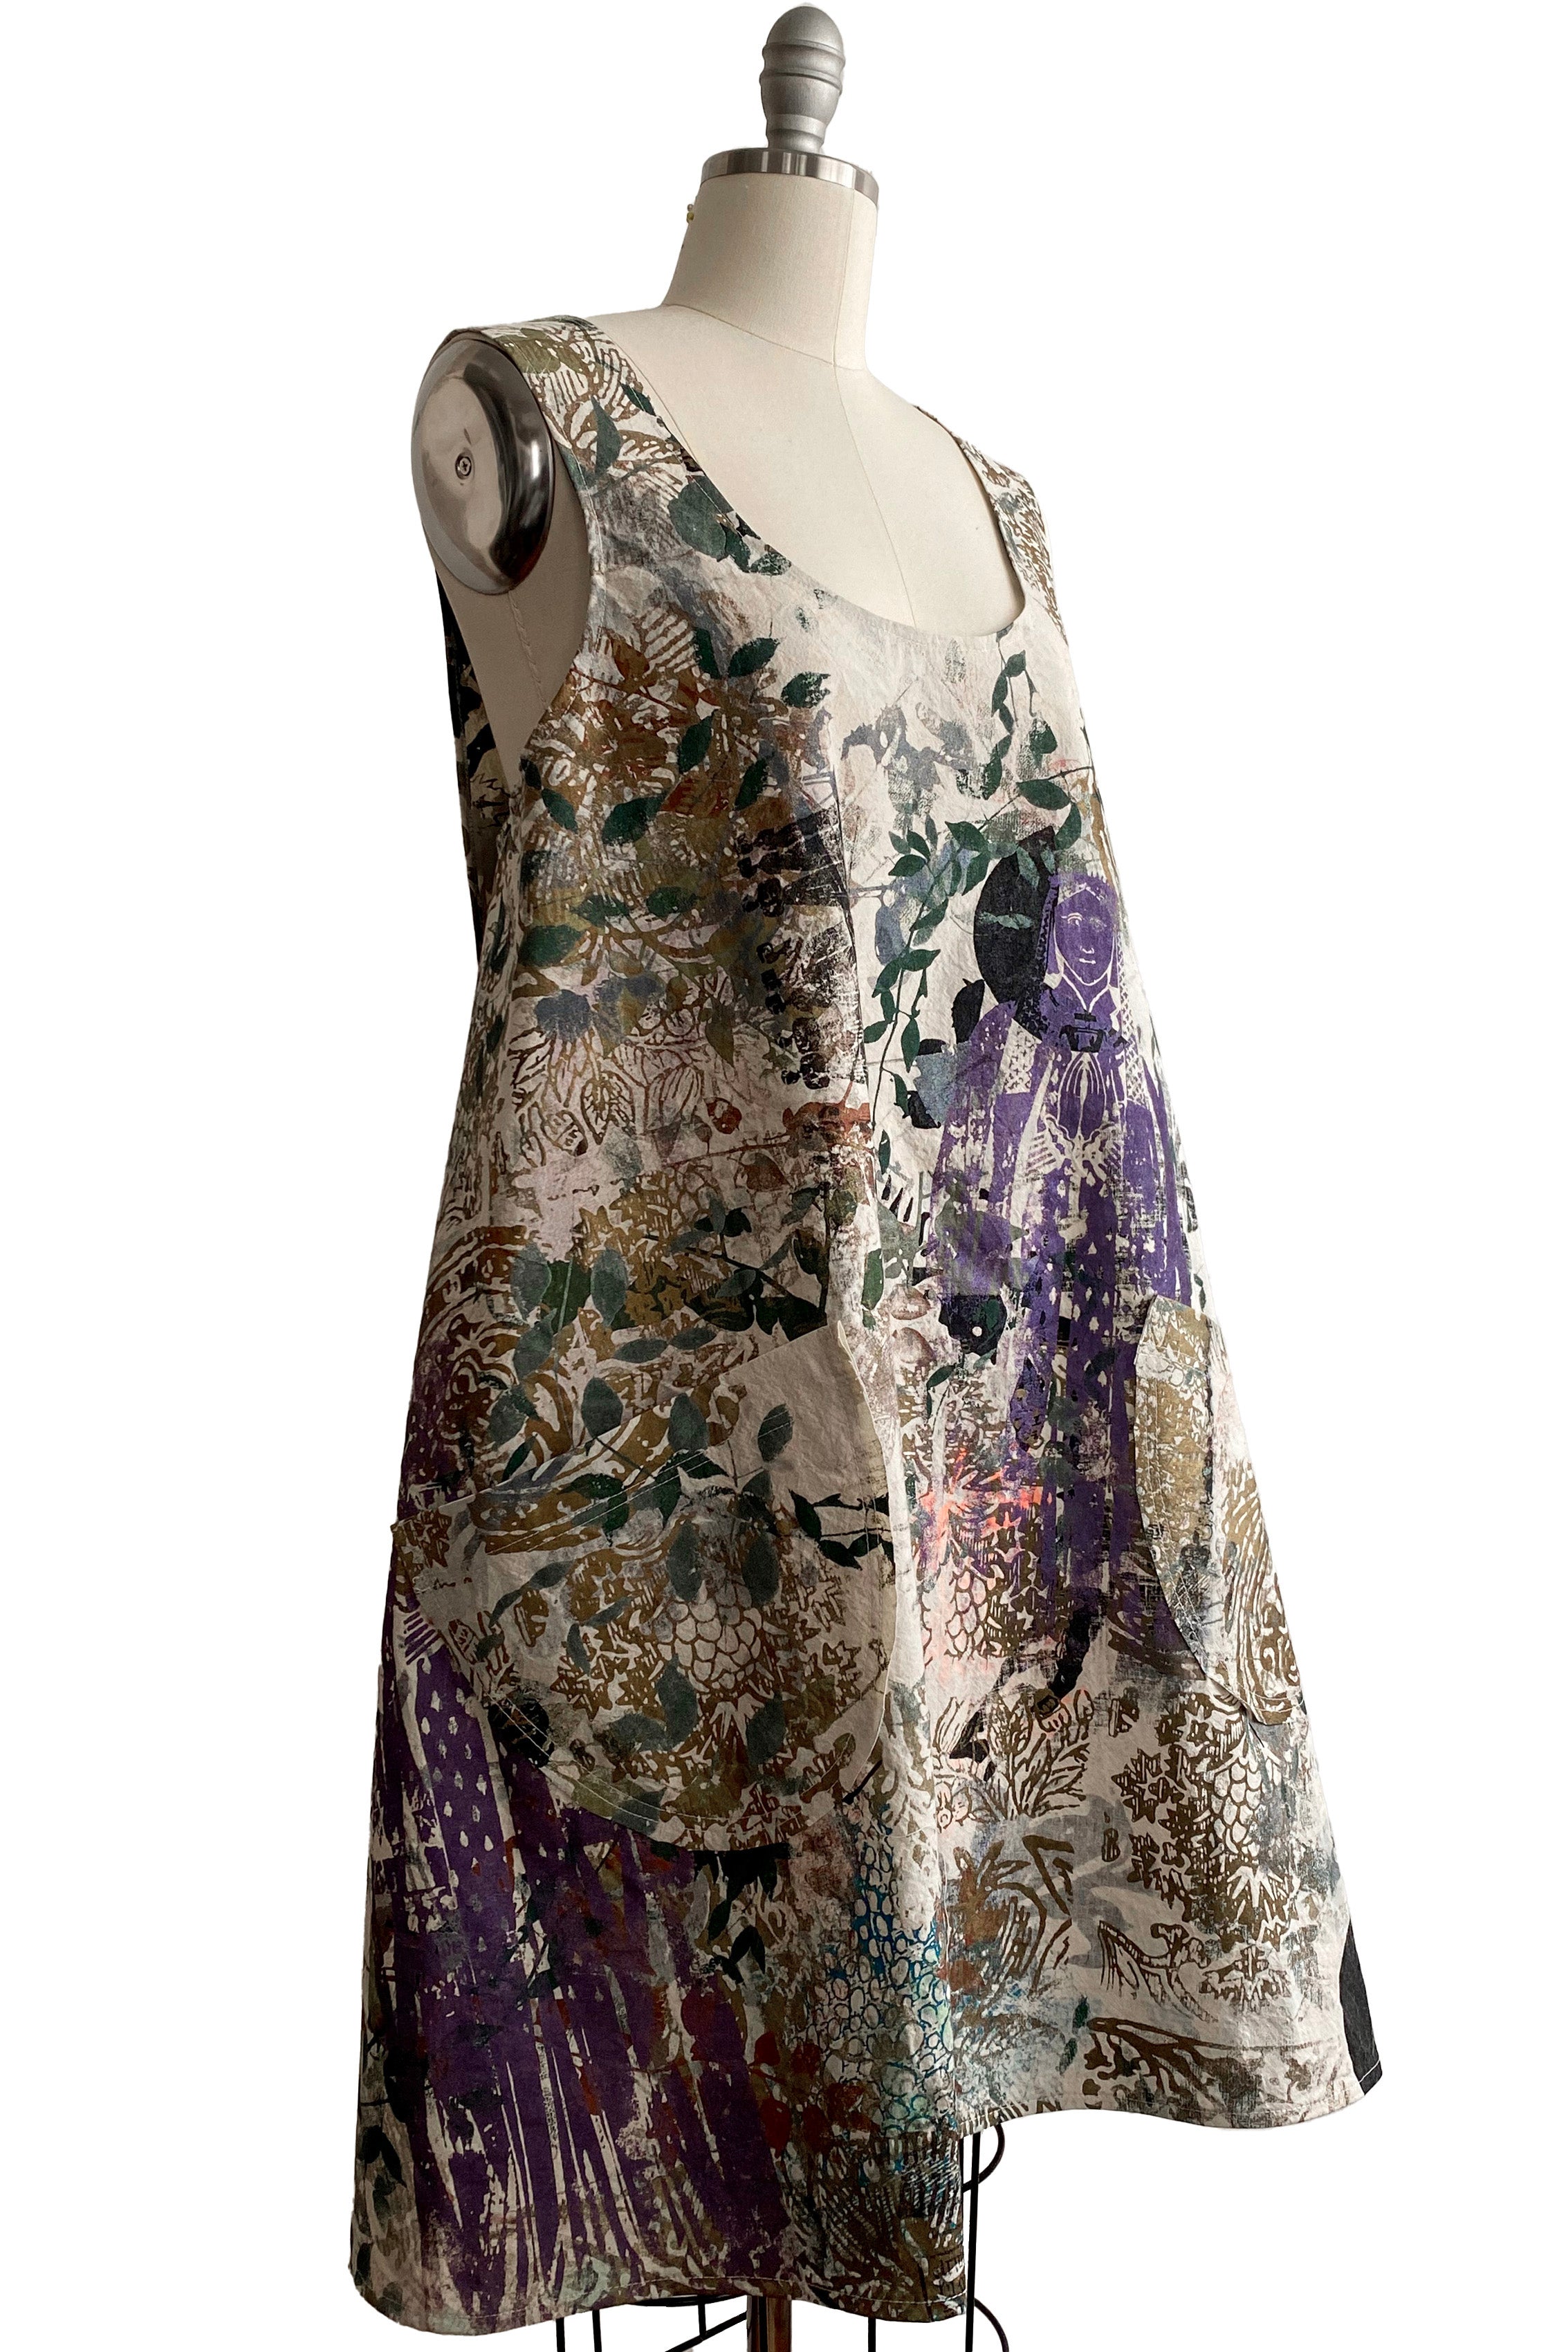 Apron Dress in Cotton - Chaos Print - Tan & Multi